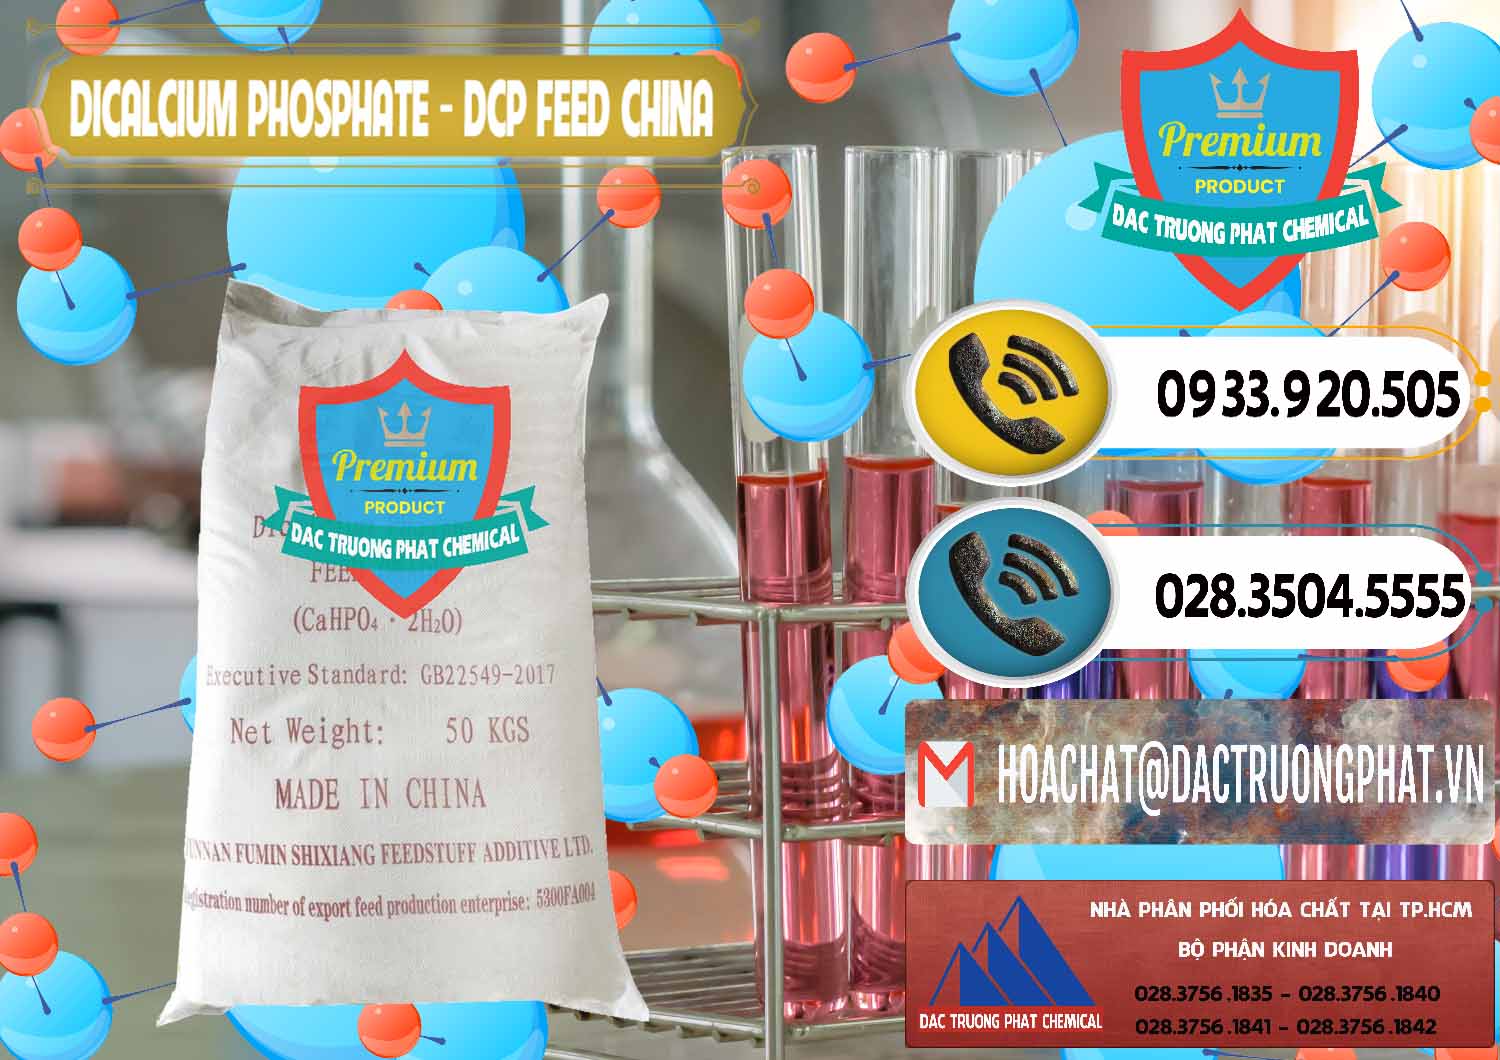 Đơn vị chuyên kinh doanh và bán Dicalcium Phosphate - DCP Feed Grade Trung Quốc China - 0296 - Cung cấp ( bán ) hóa chất tại TP.HCM - hoachatdetnhuom.vn